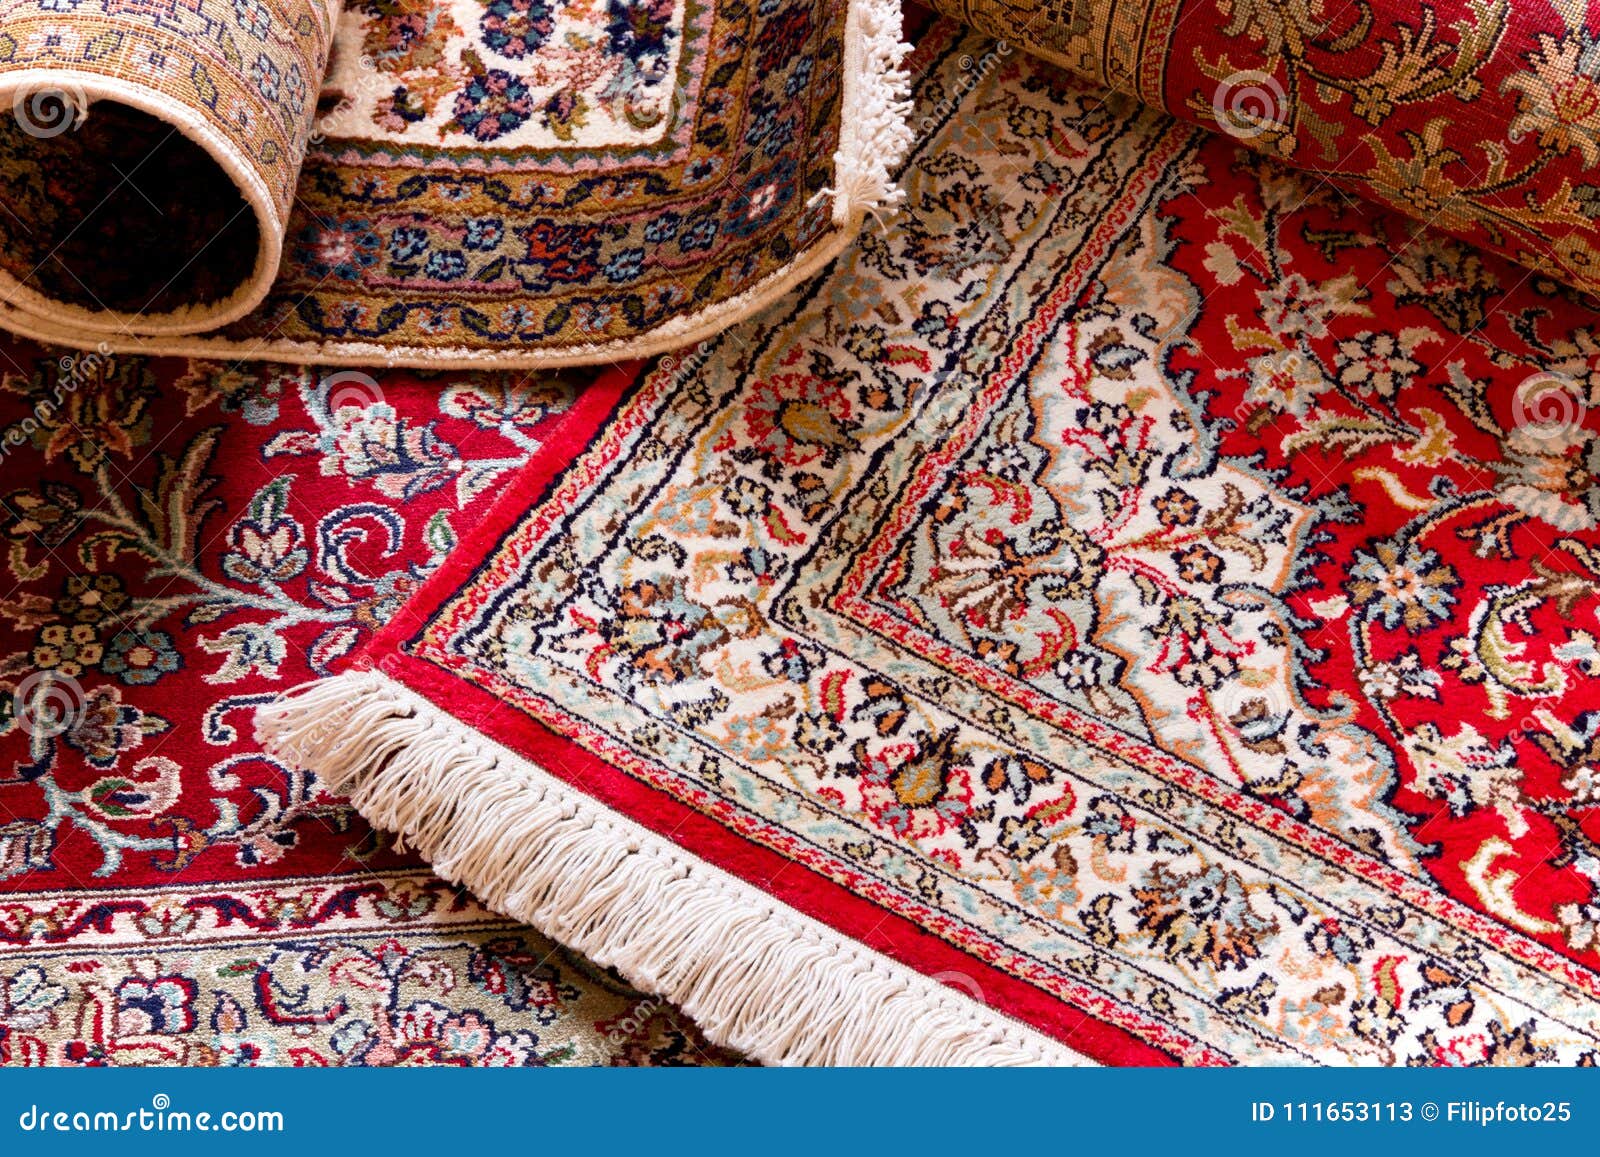 handmade kashmir carpets